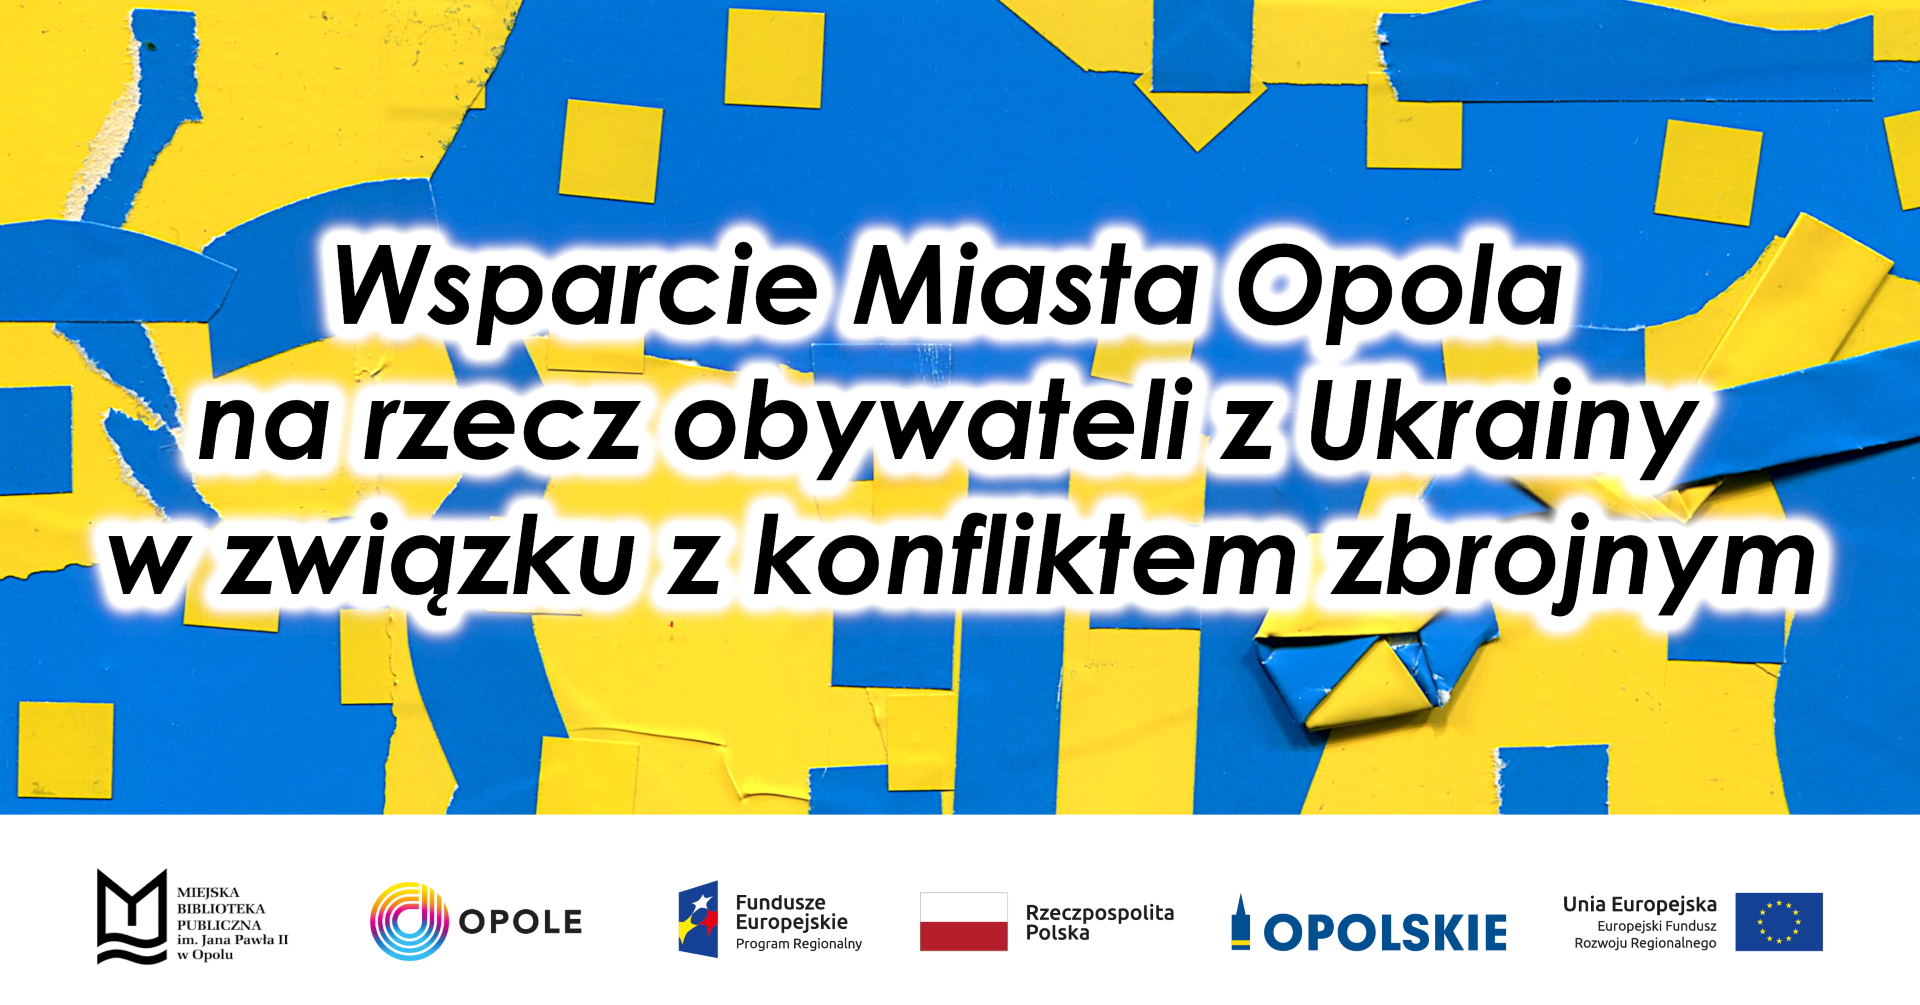 You are currently viewing Wsparcie Miasta Opola na rzecz obywateli z Ukrainy w związku z konfliktem zbrojnym